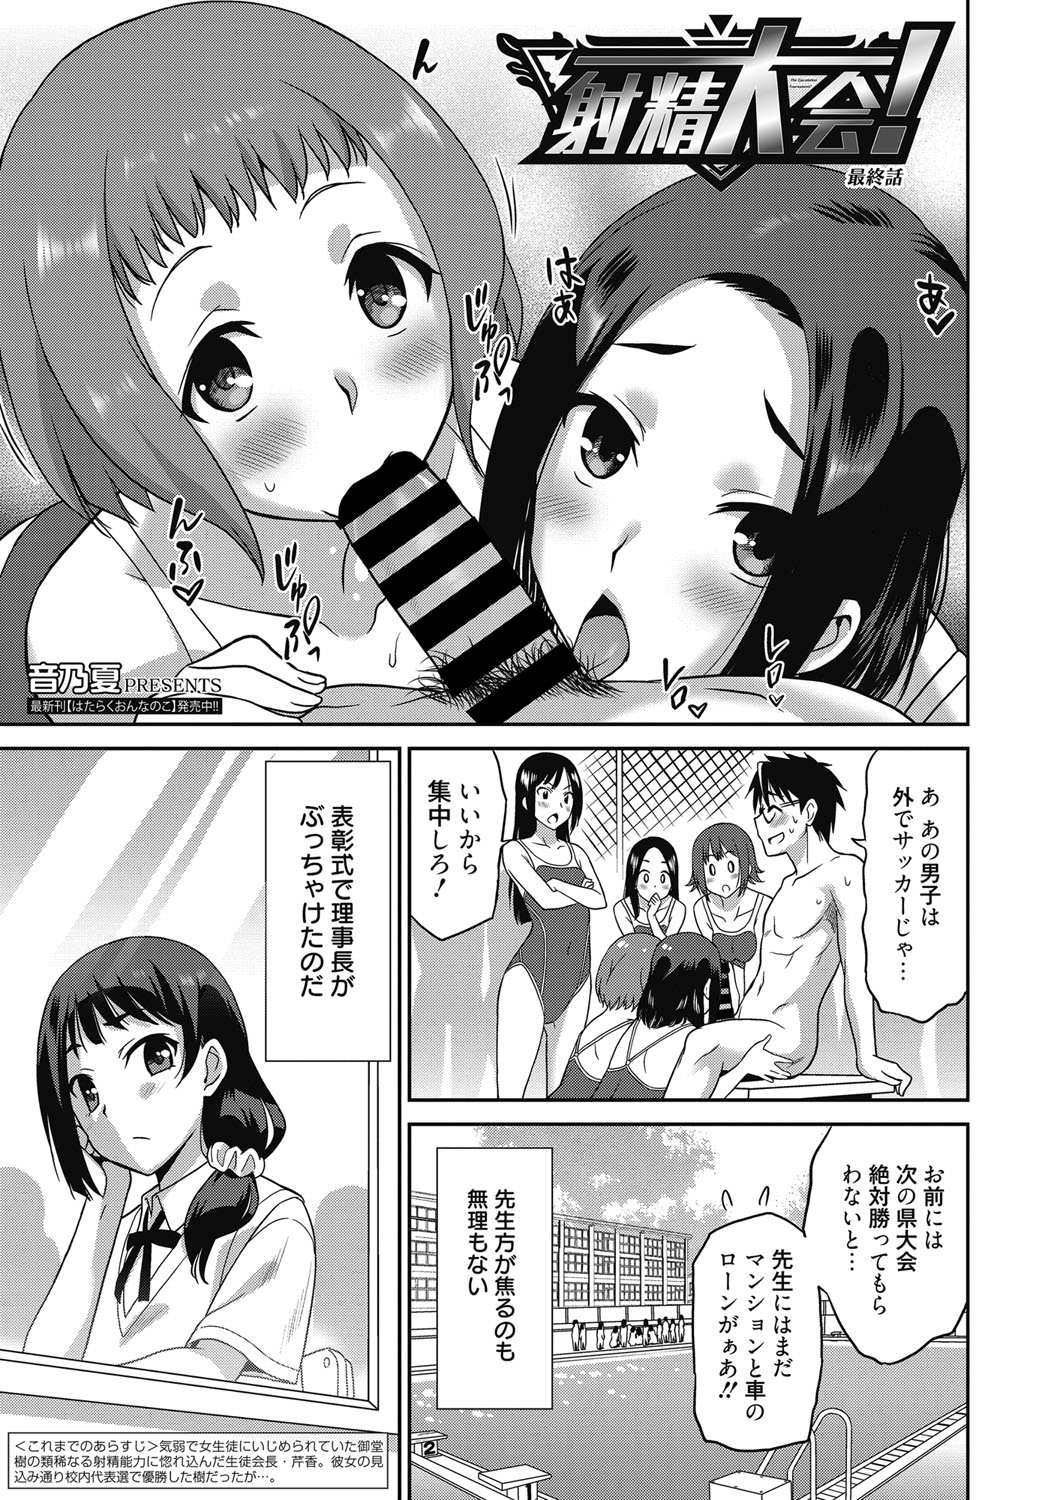 web 漫画ばんがいち Vol.18